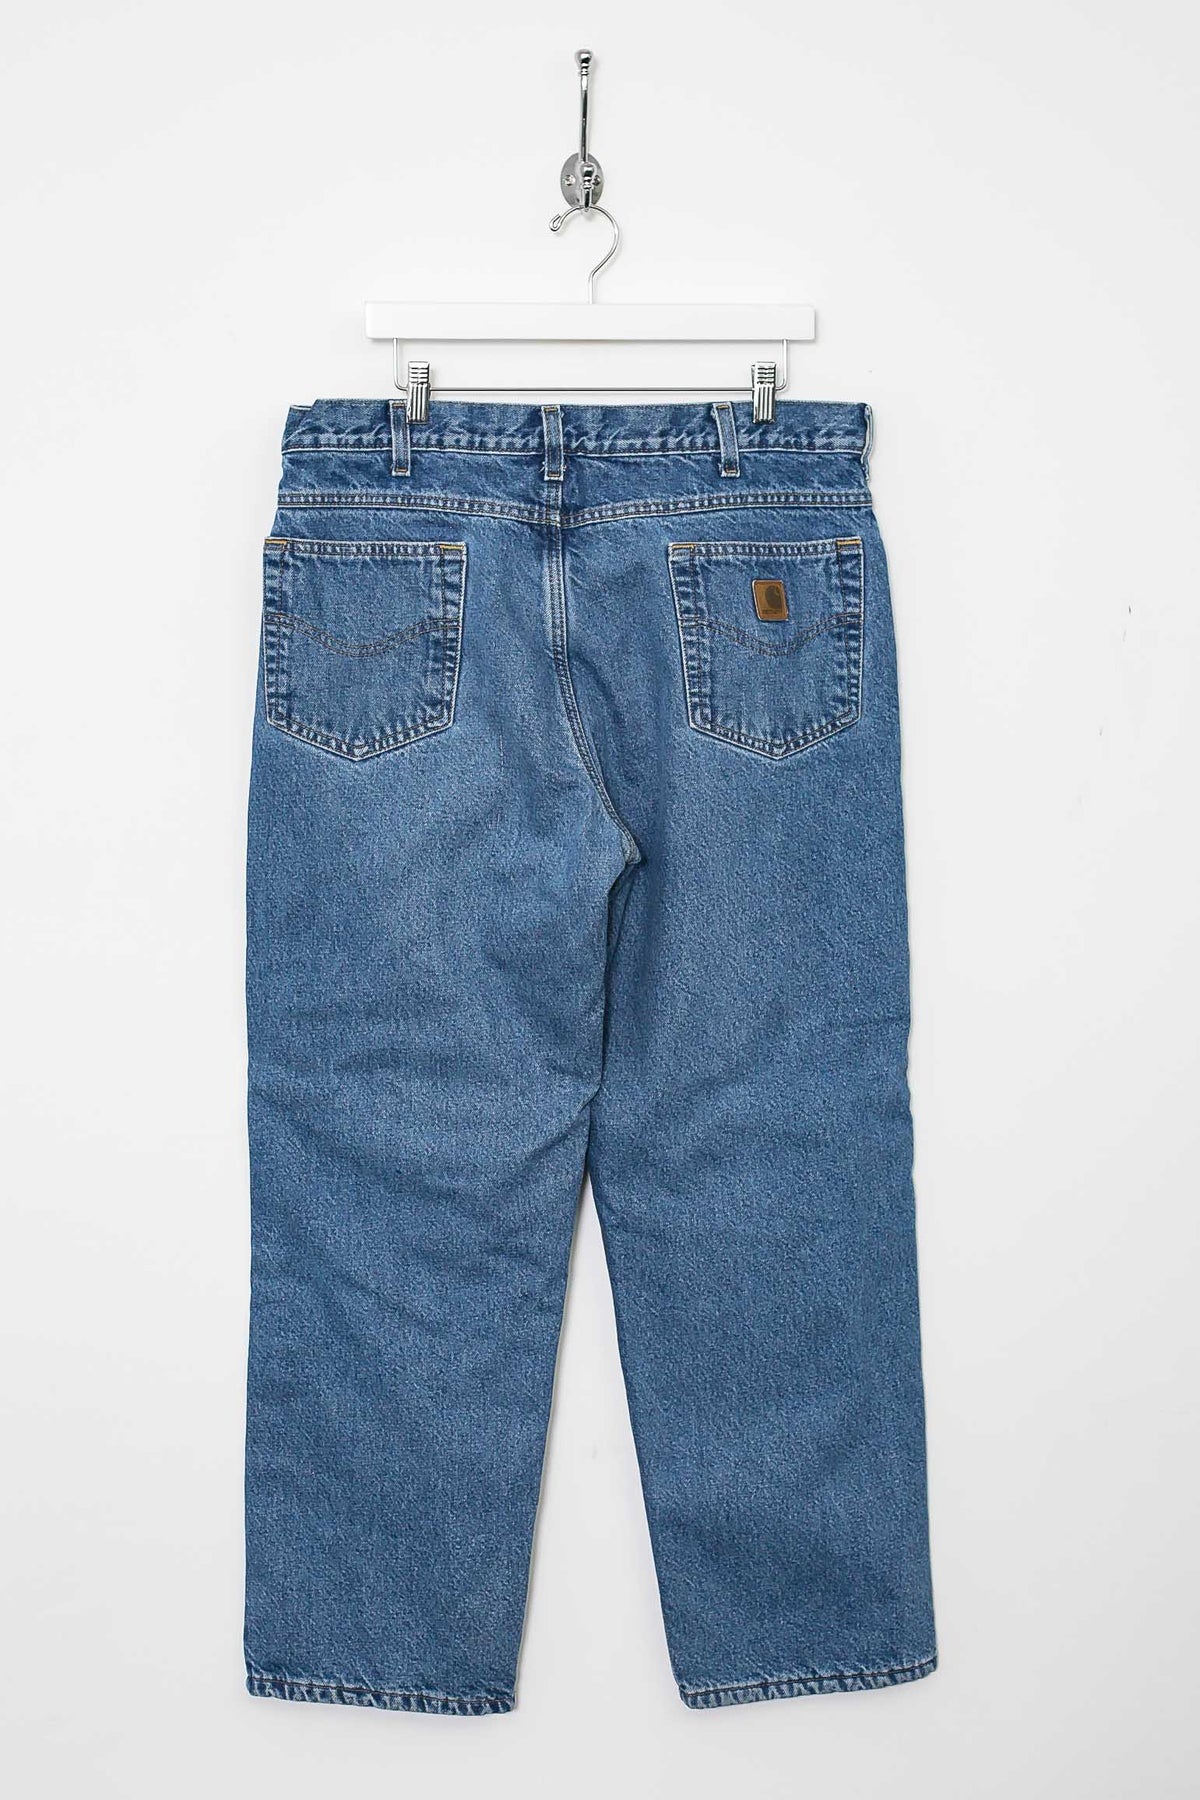 00s Carhartt Jeans (L)